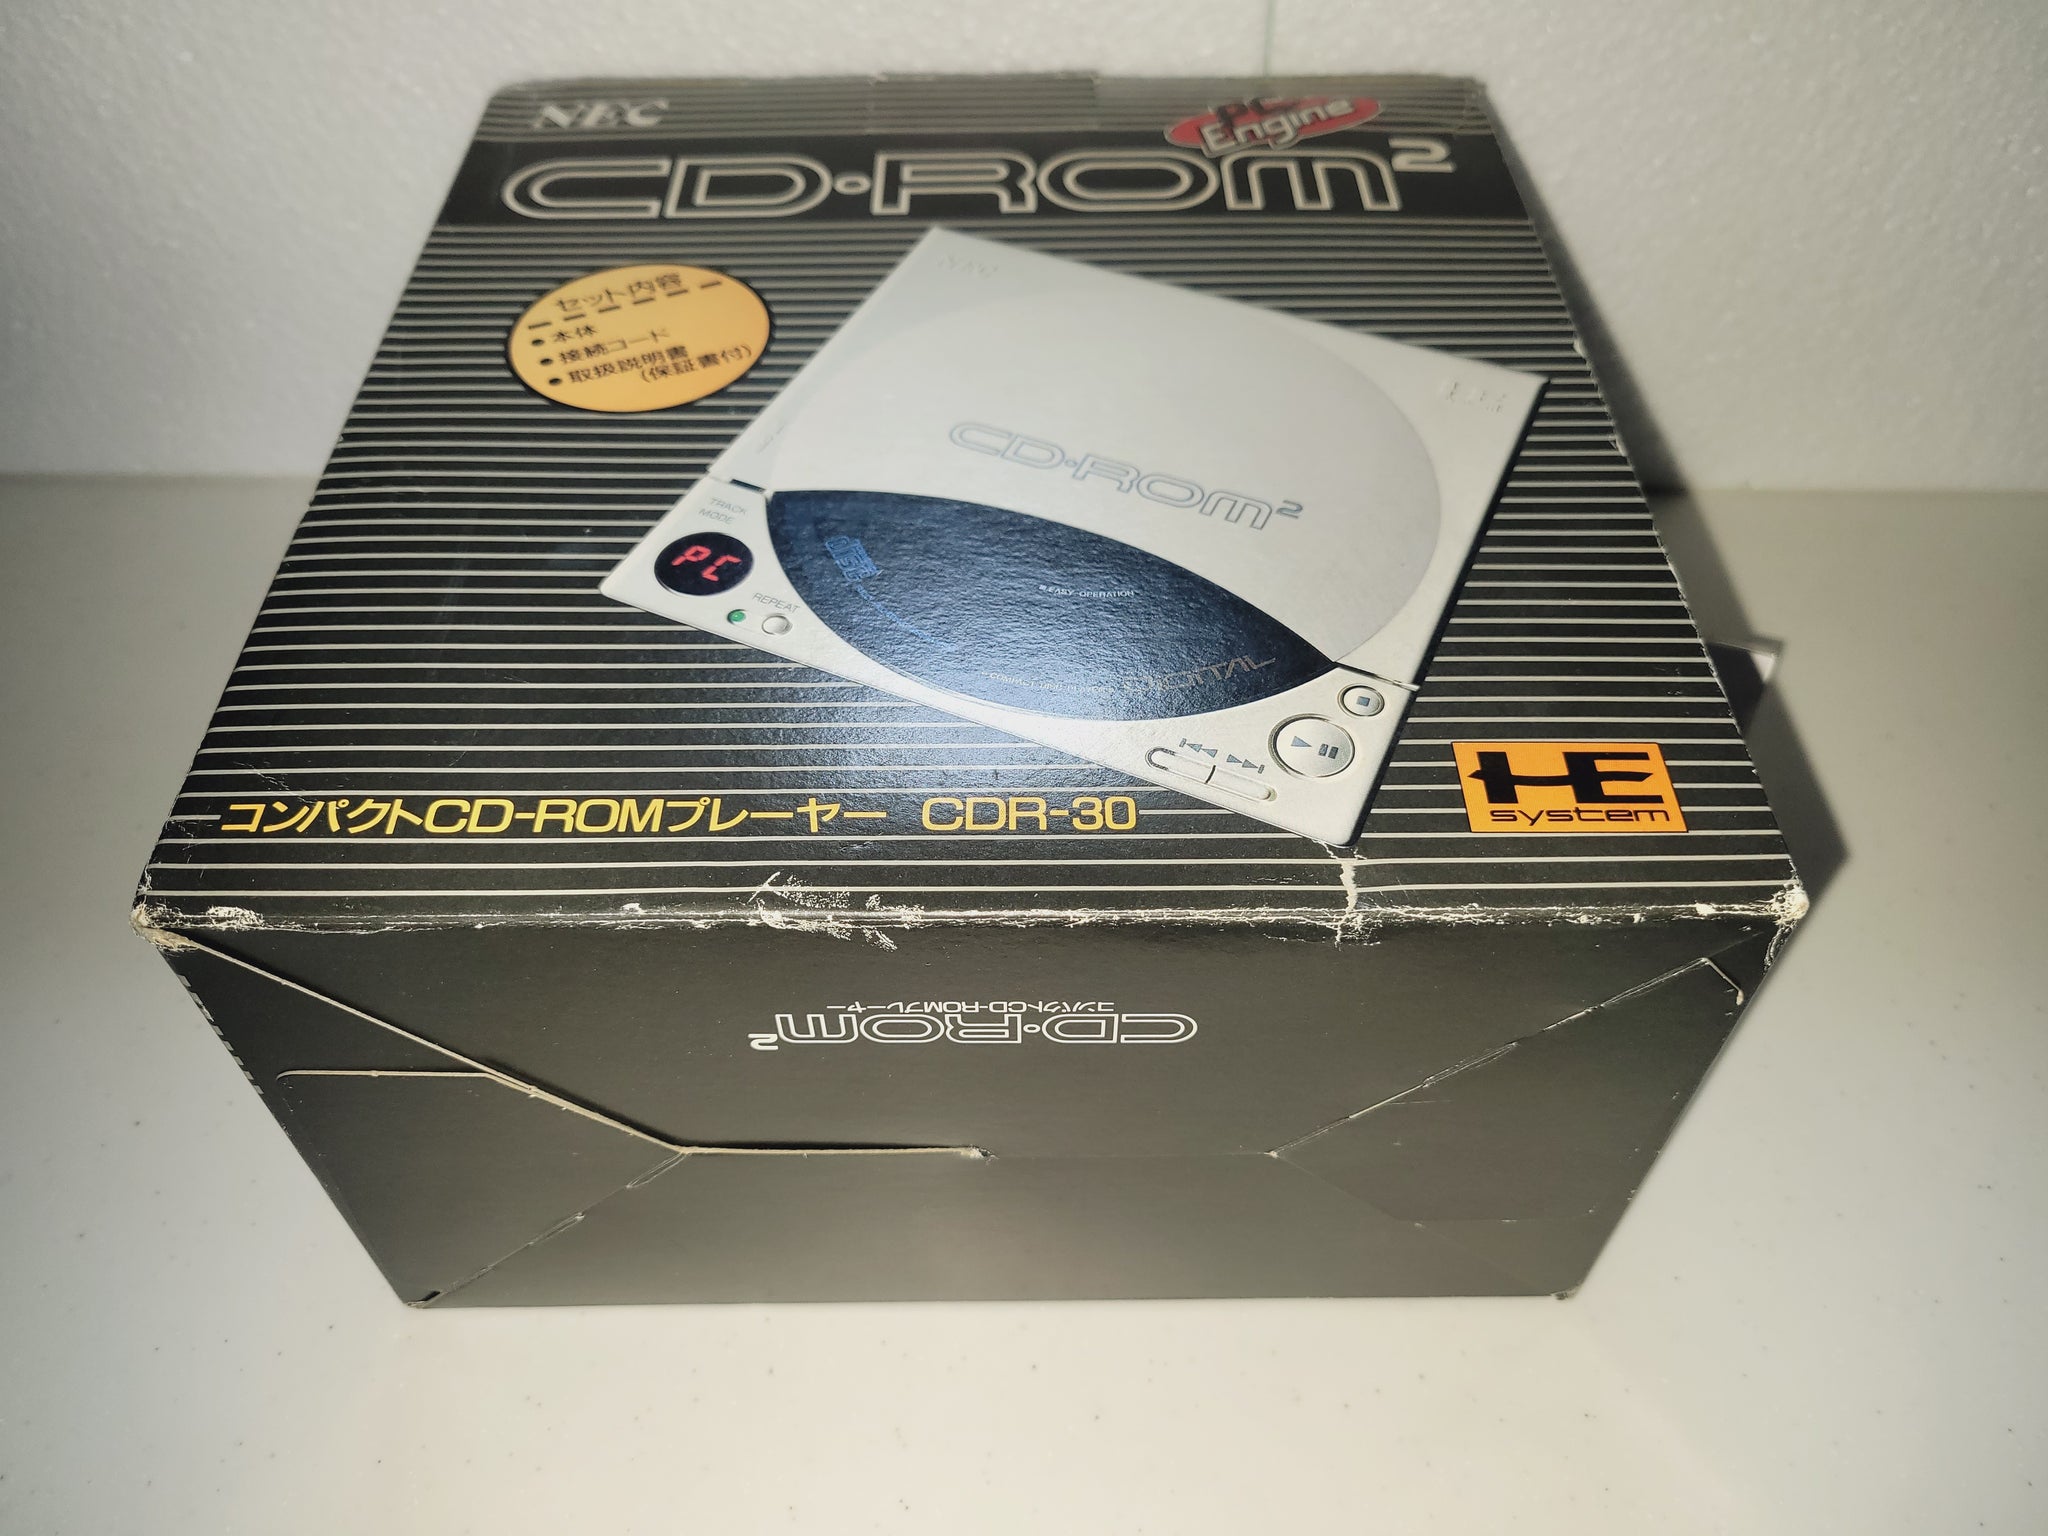 PC Engine CD-ROM2 [CDR-30] - Nec Pce PcEngine – The Emporium